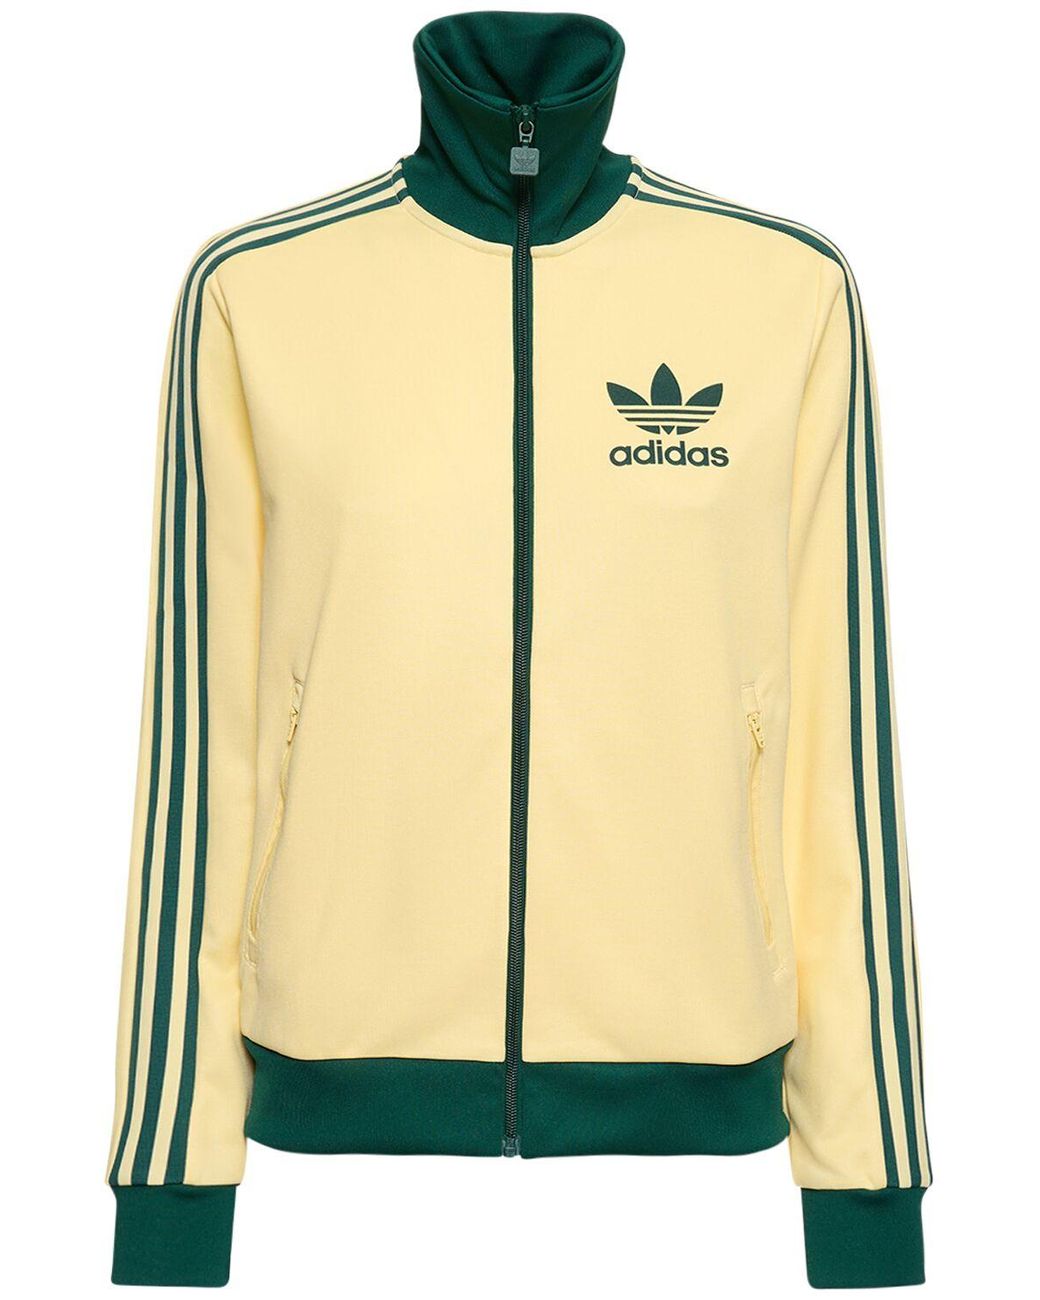 adidas Originals Beckenbauer Tech Track Jacket in Yellow | Lyst Australia